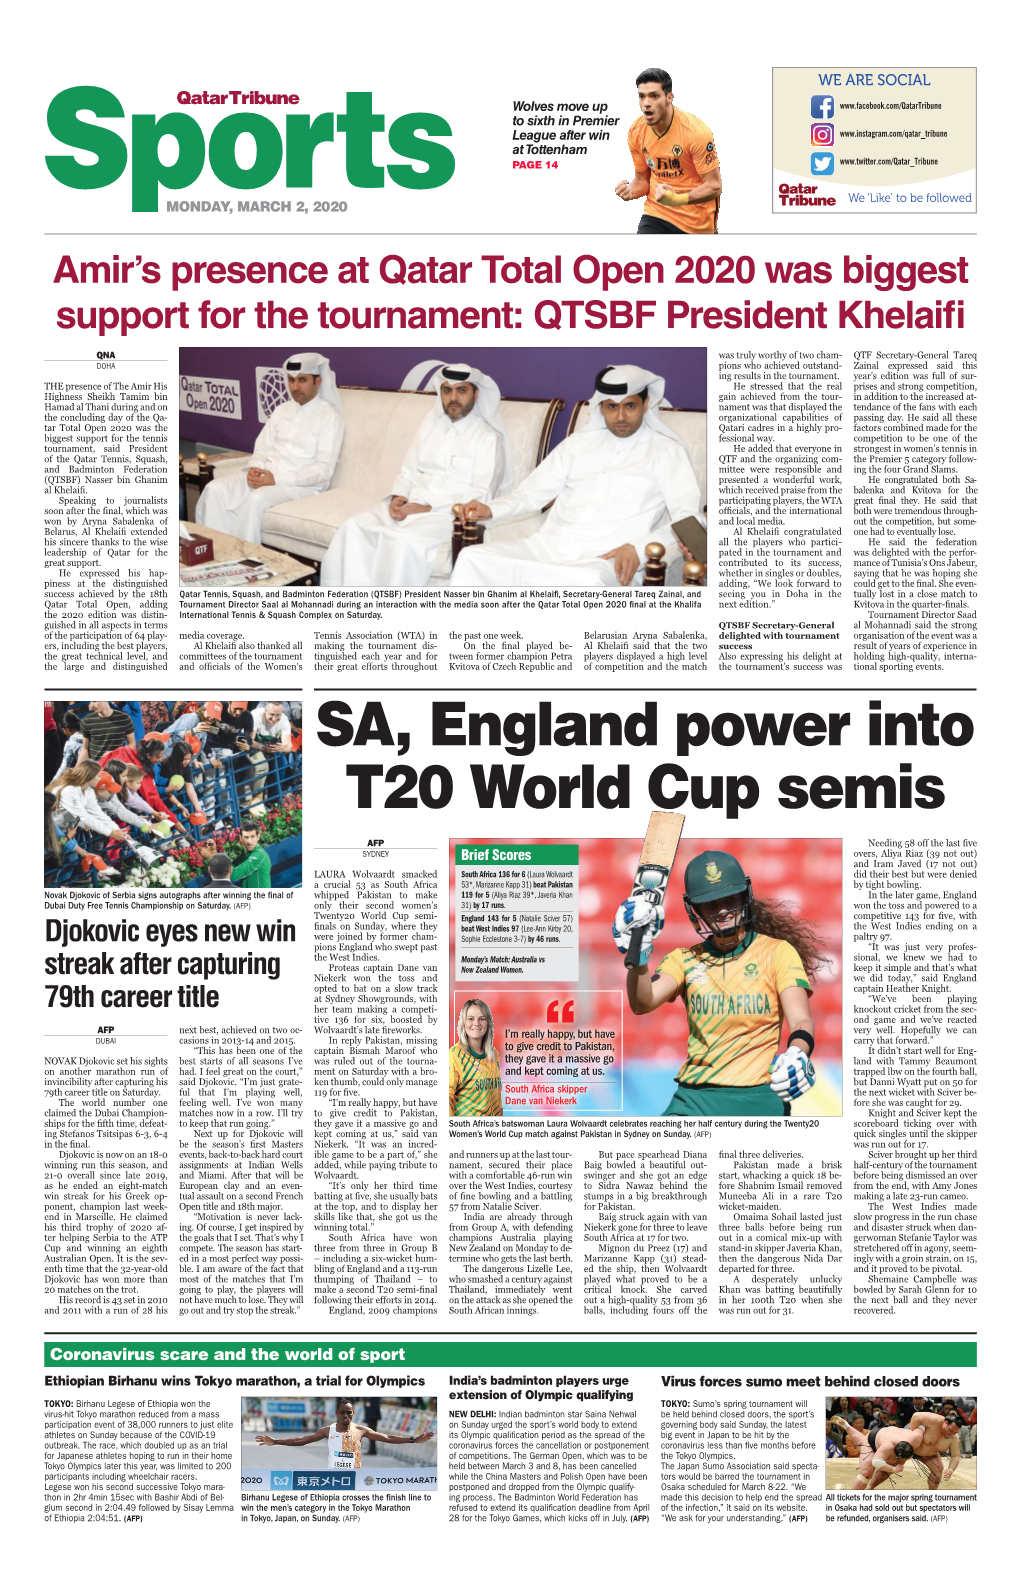 SA, England Power Into T20 World Cup Semis